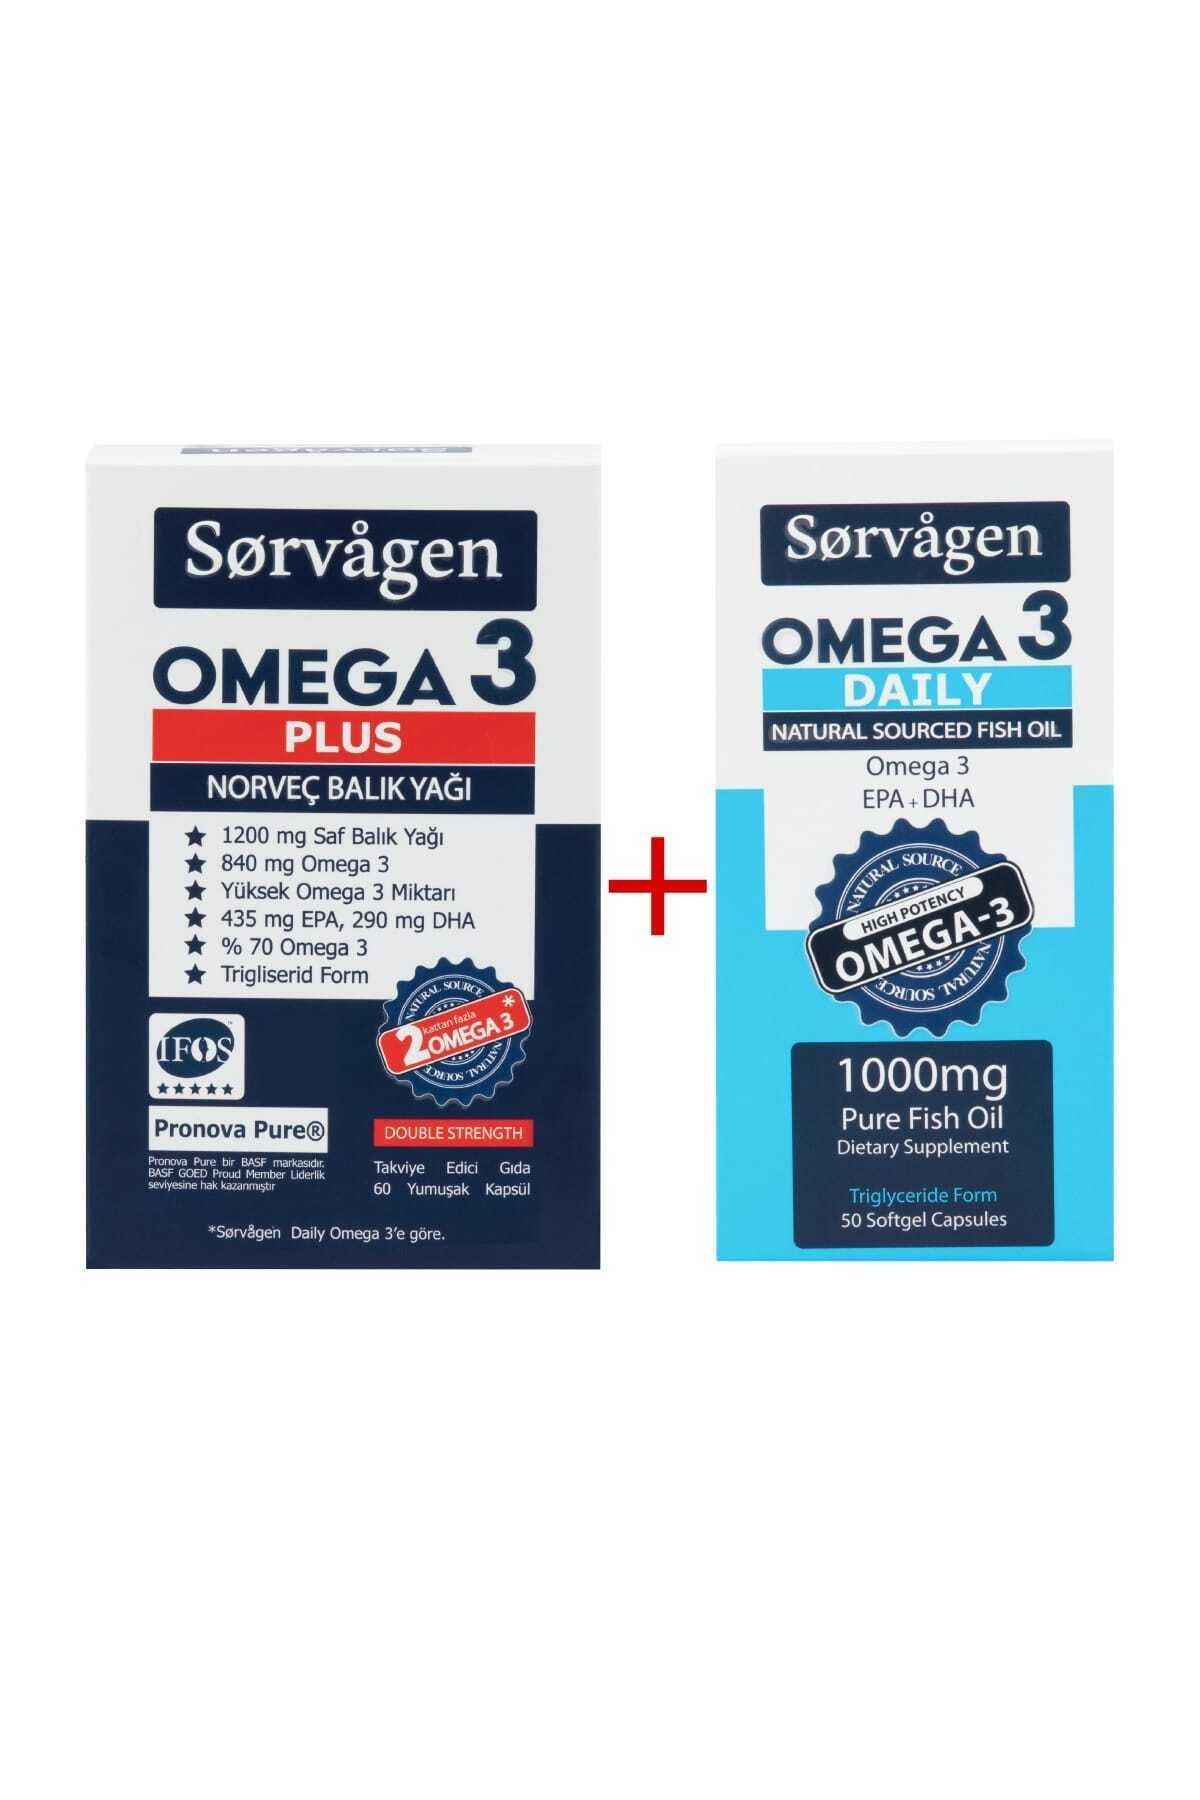 Sorvagen Omega 3 Plus Norveç Balık Yağı, 1200 Mg , Omega 3 Daily Saf Balık Yağı, 50 Kapsül, 1000 Mg